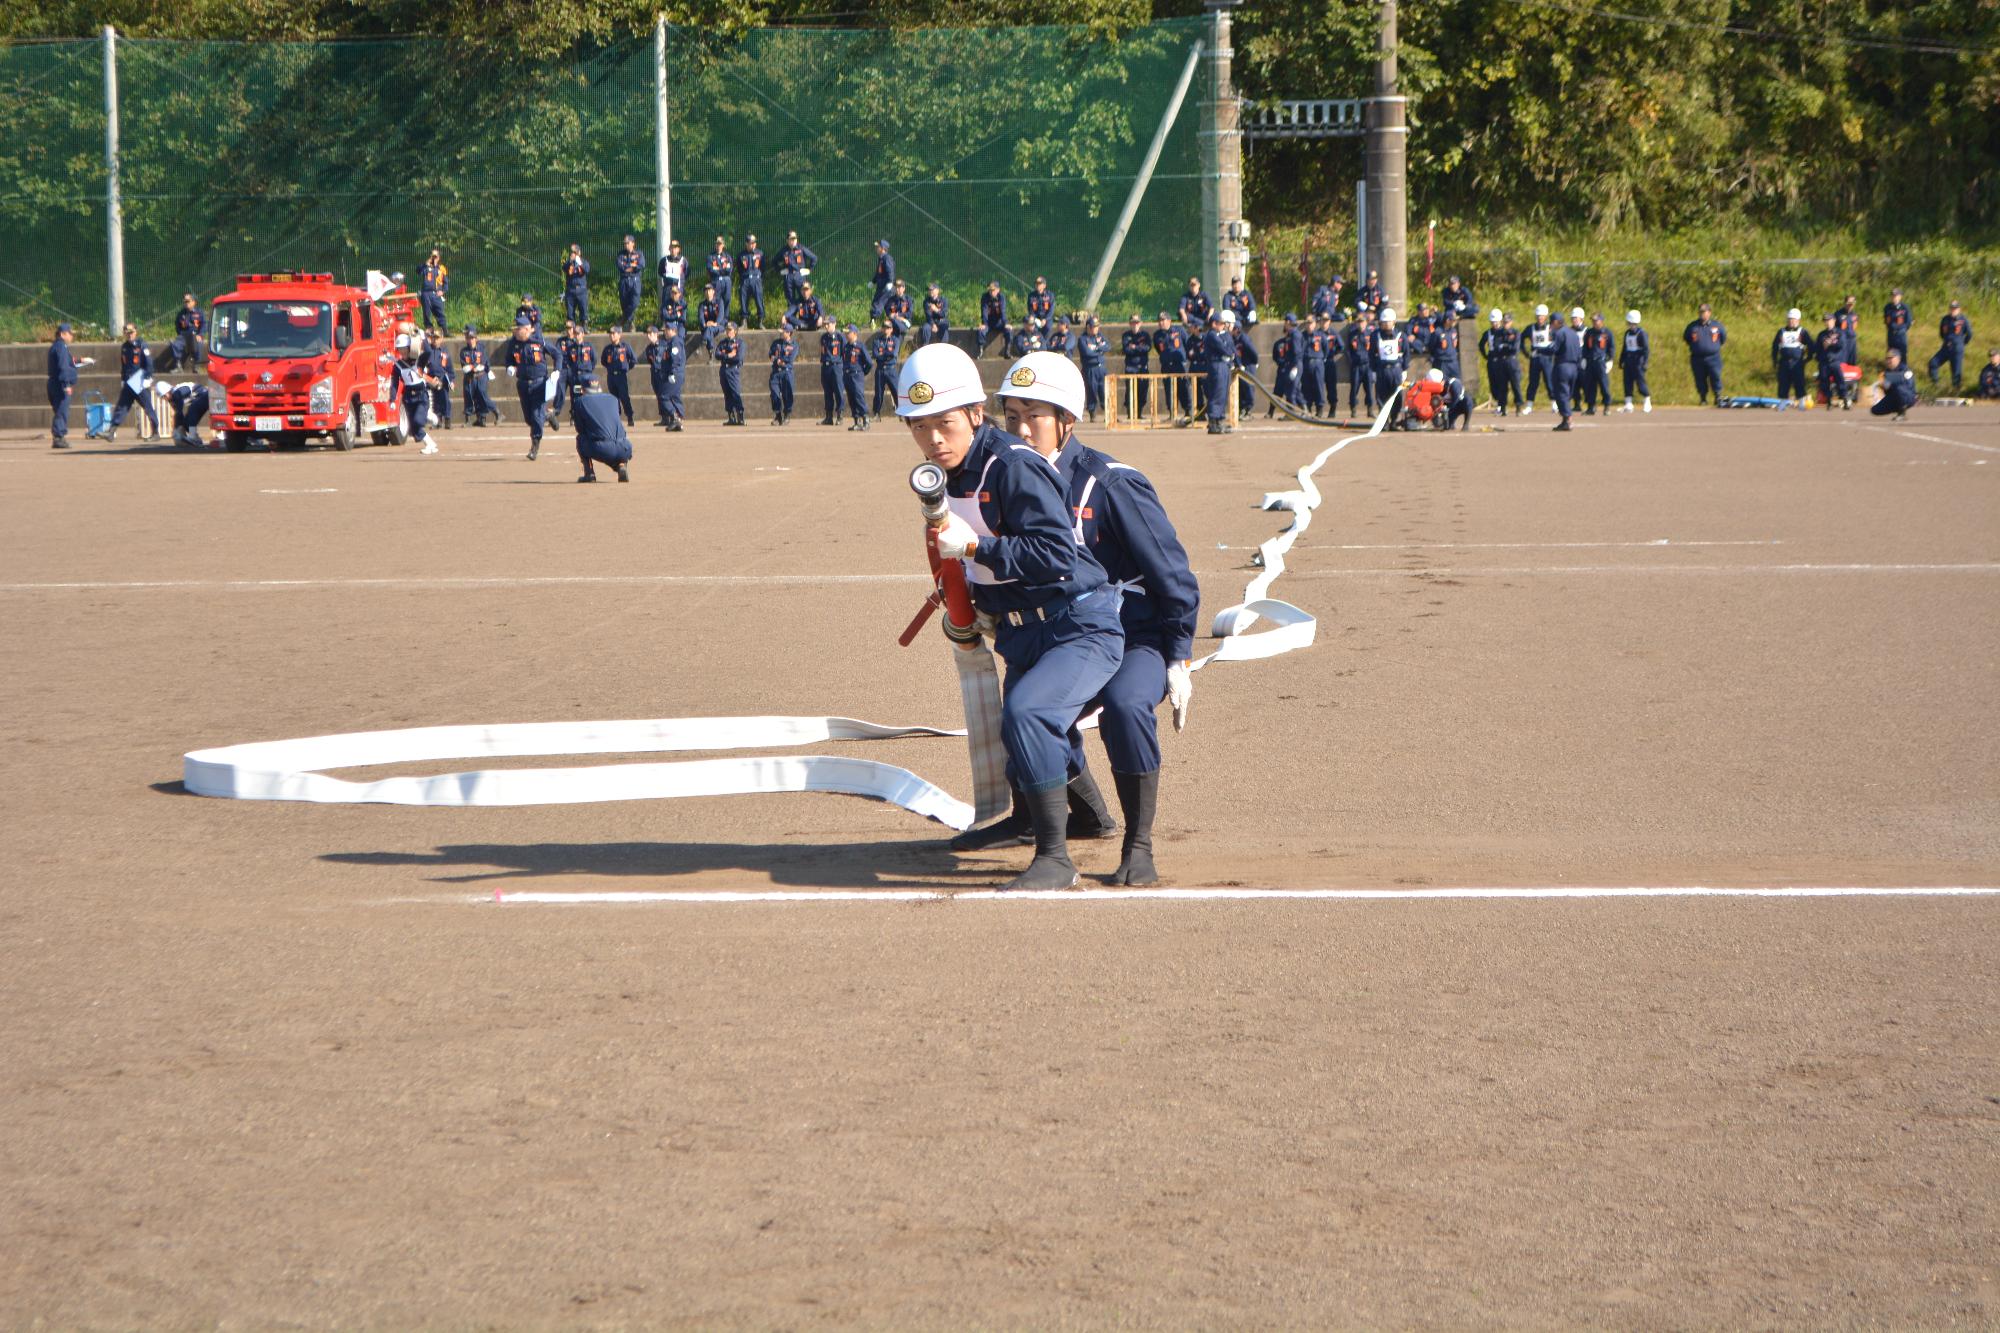 ヘルメットを着用した隊員2名が消火活動に使用するホースを手に持ち放水訓練を行っている写真